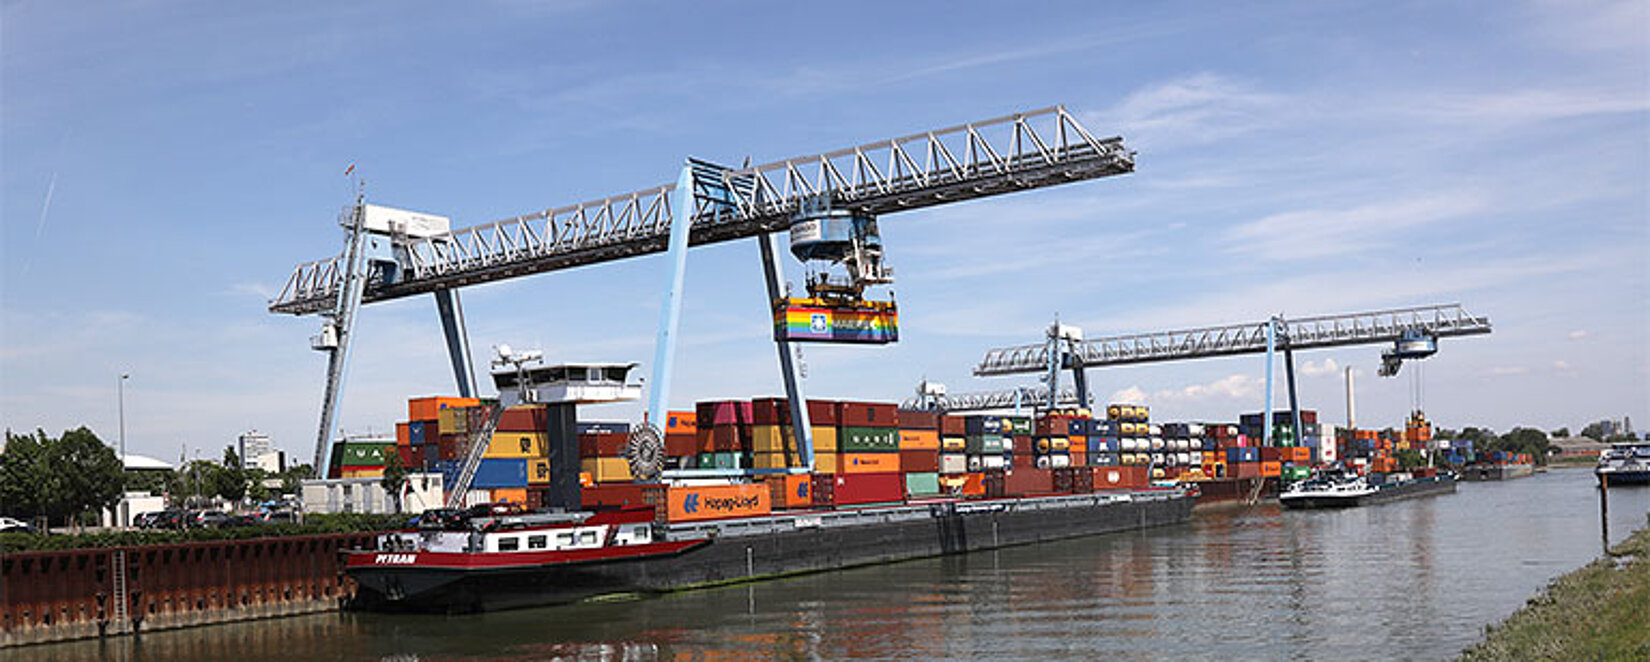 Krananlage entlädt ein Binnenschiff am Container-Terminal Ludwigshafen